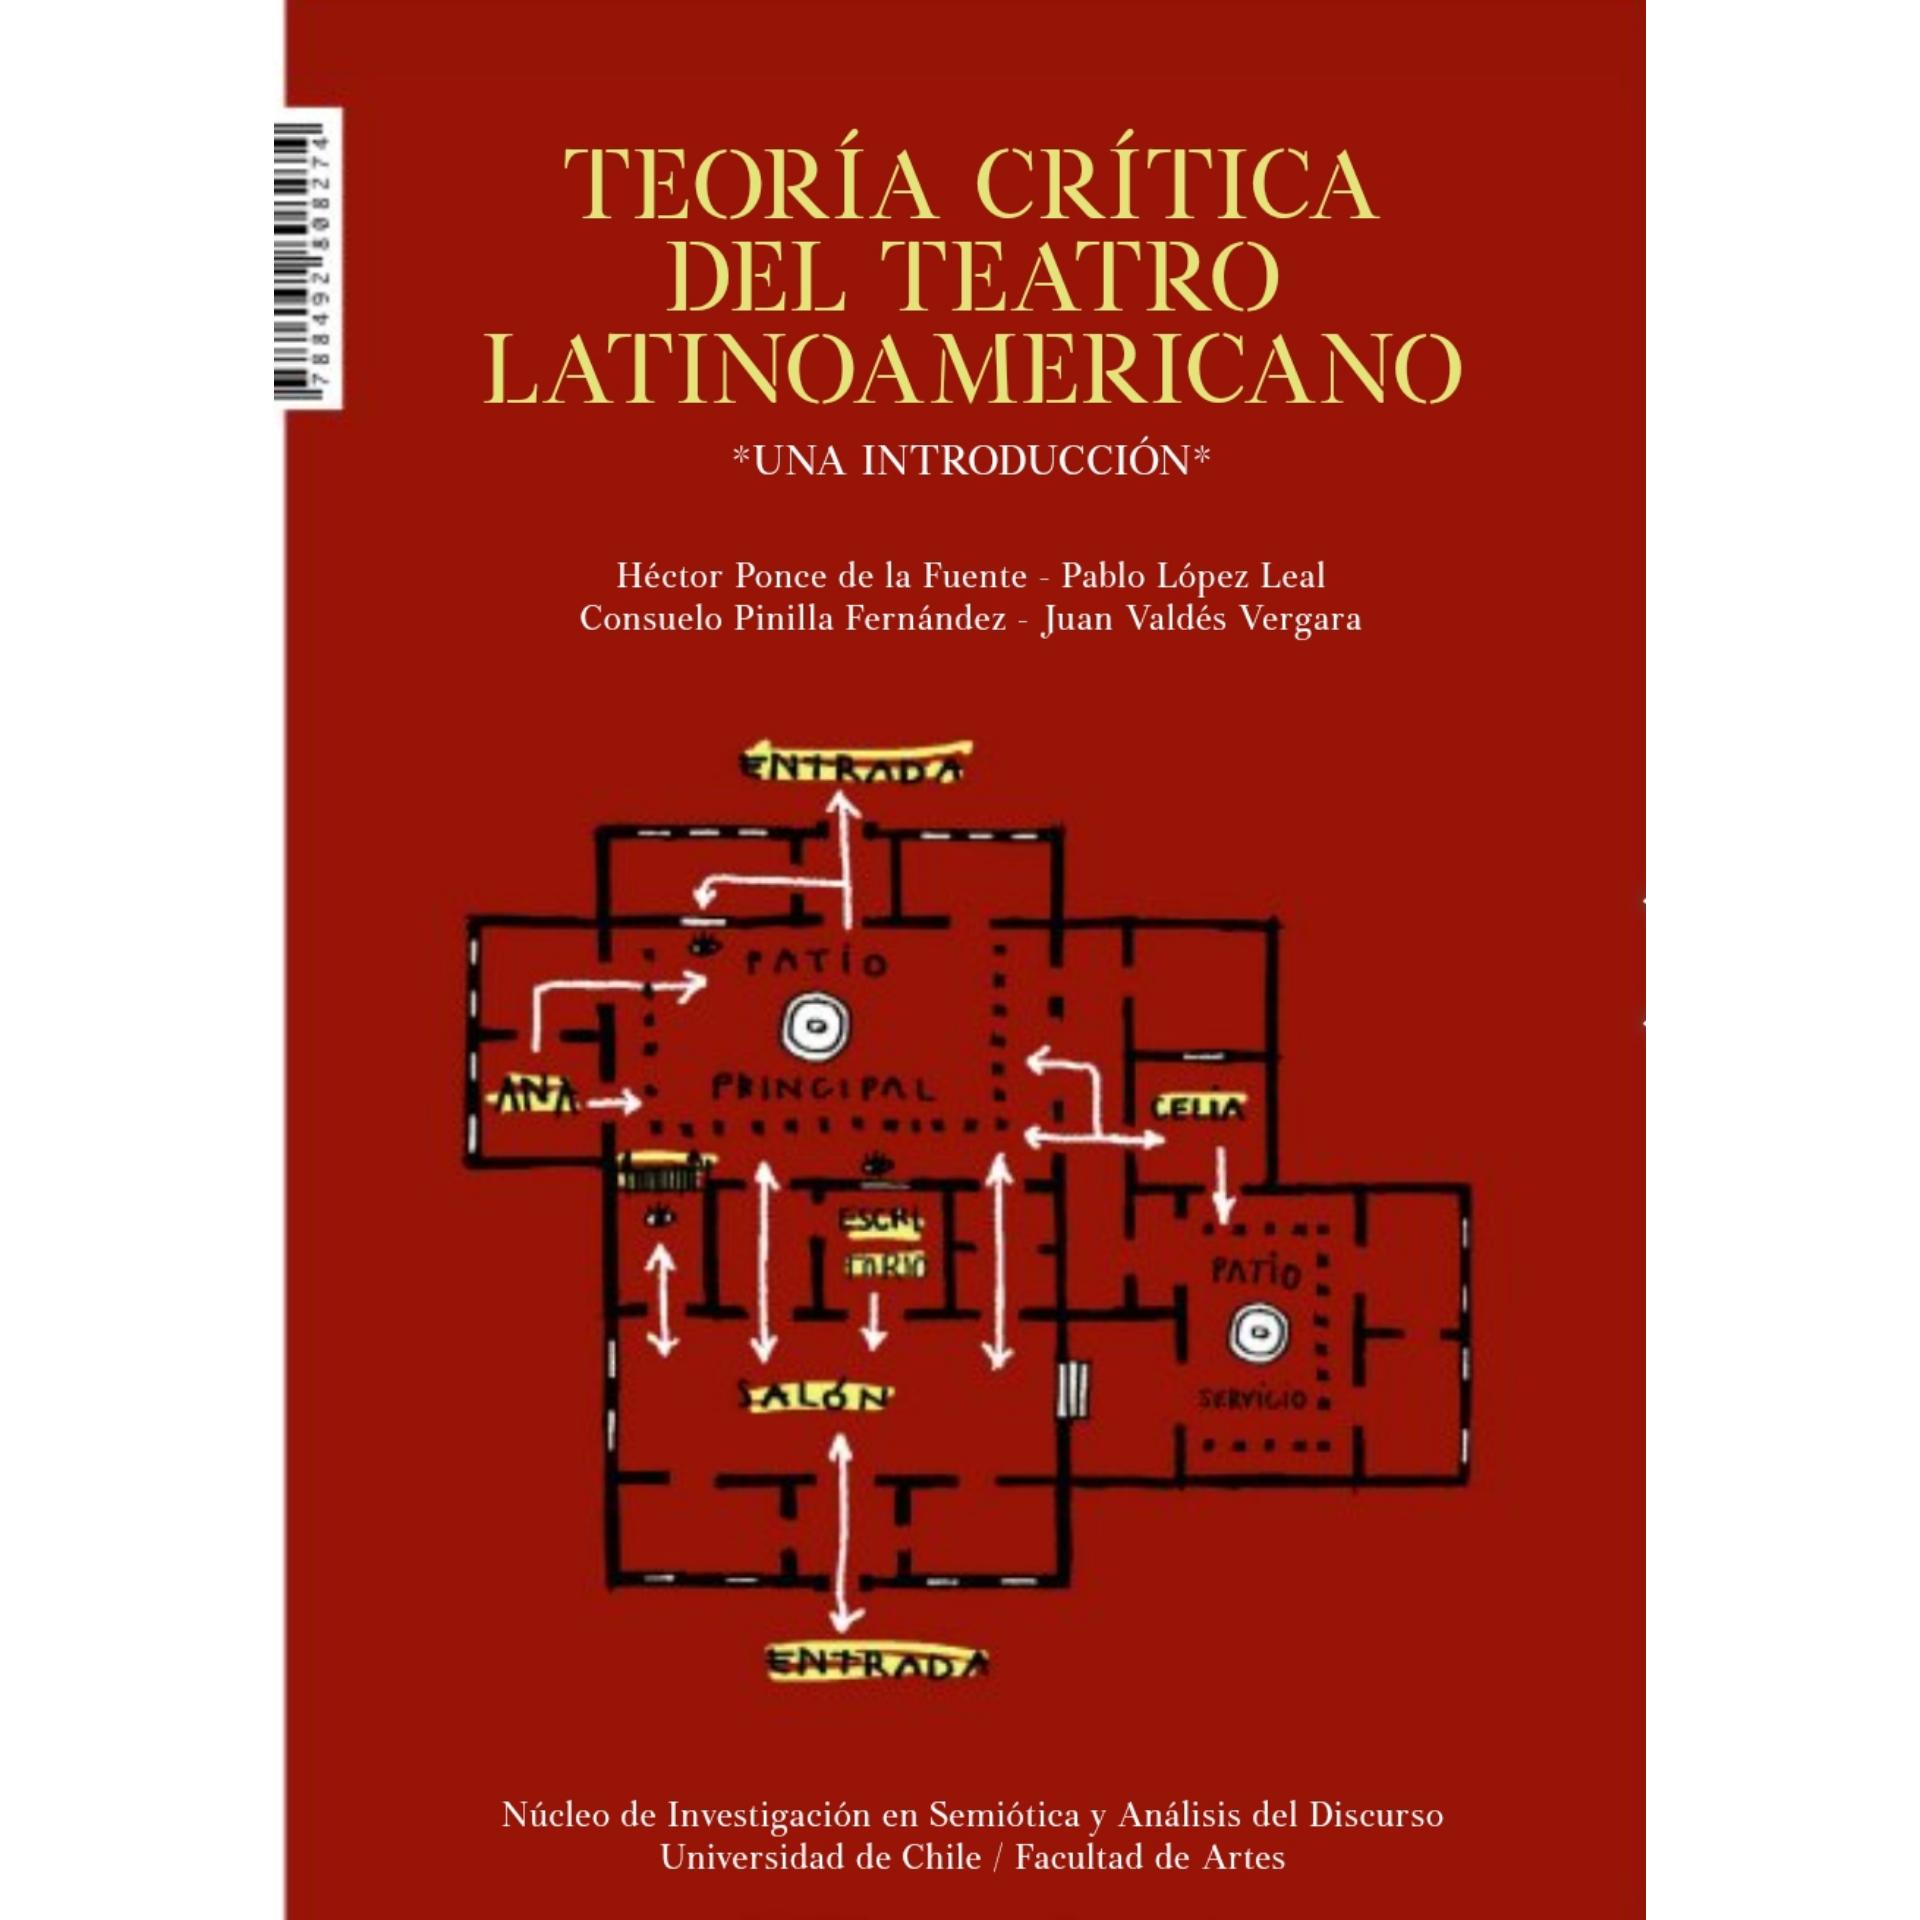 Libro "Teoría crítica del teatro latinoamericano: una introducción"